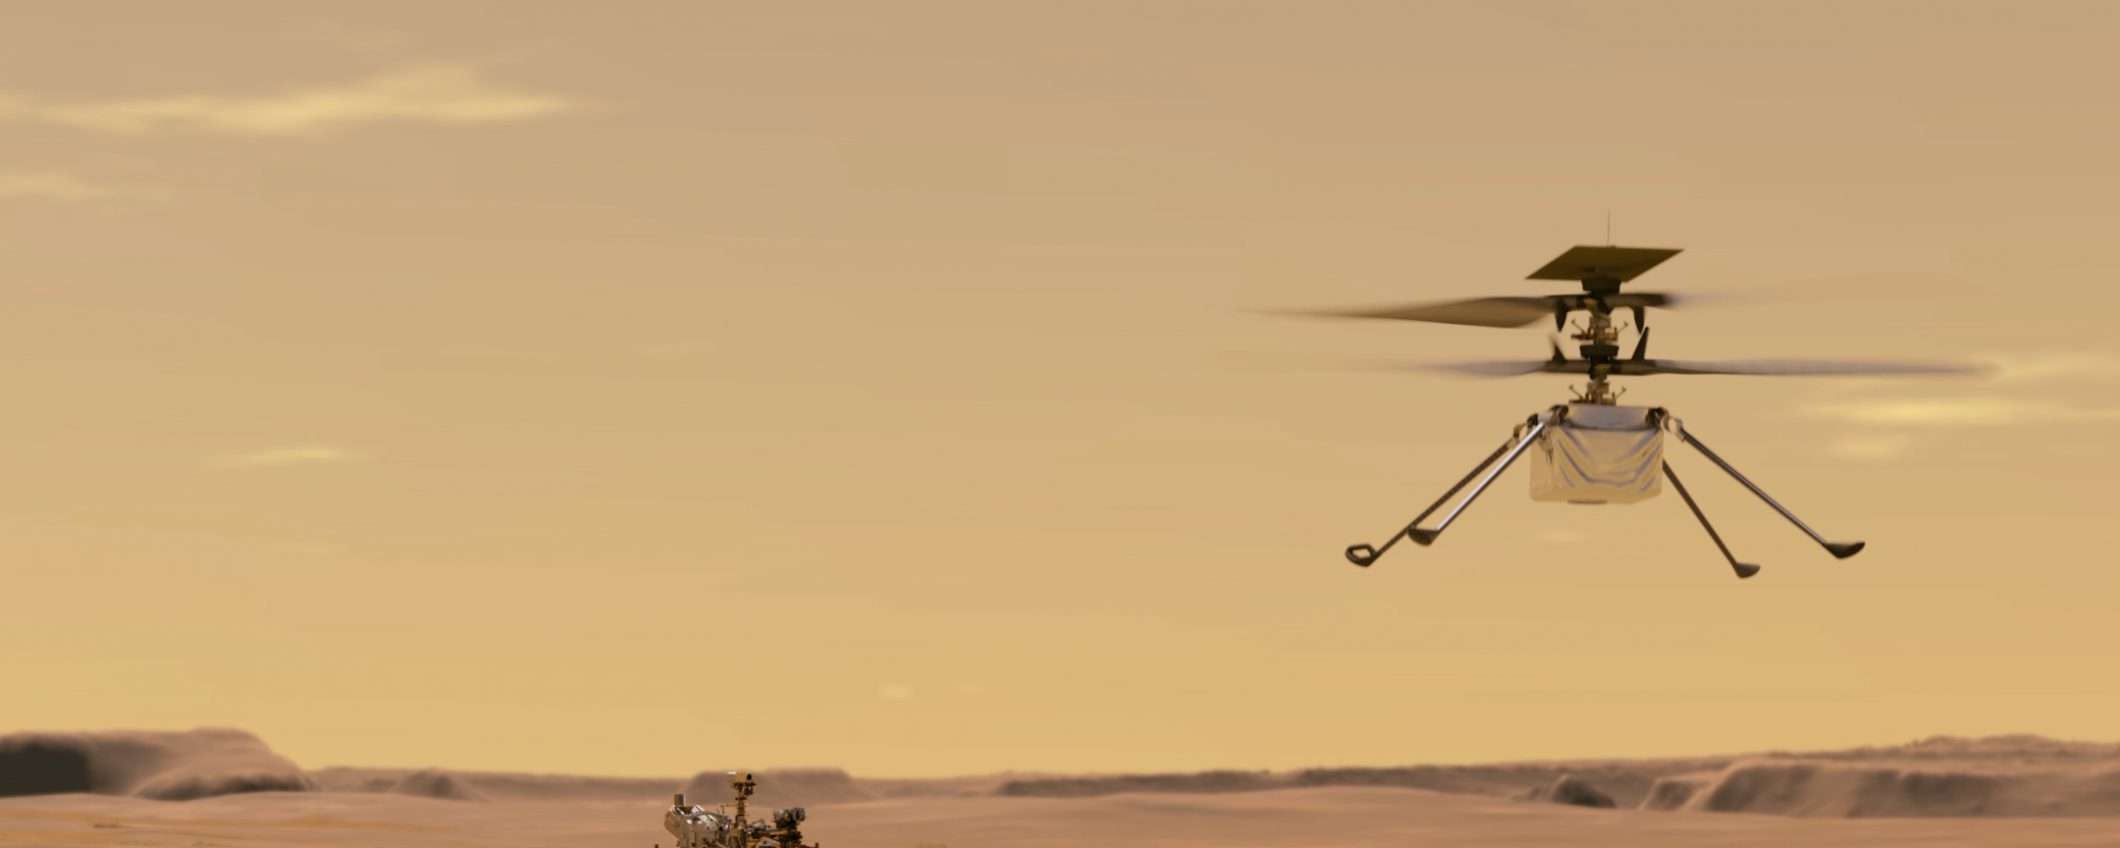 Ingenuity, l'elicottero che volerà su Marte